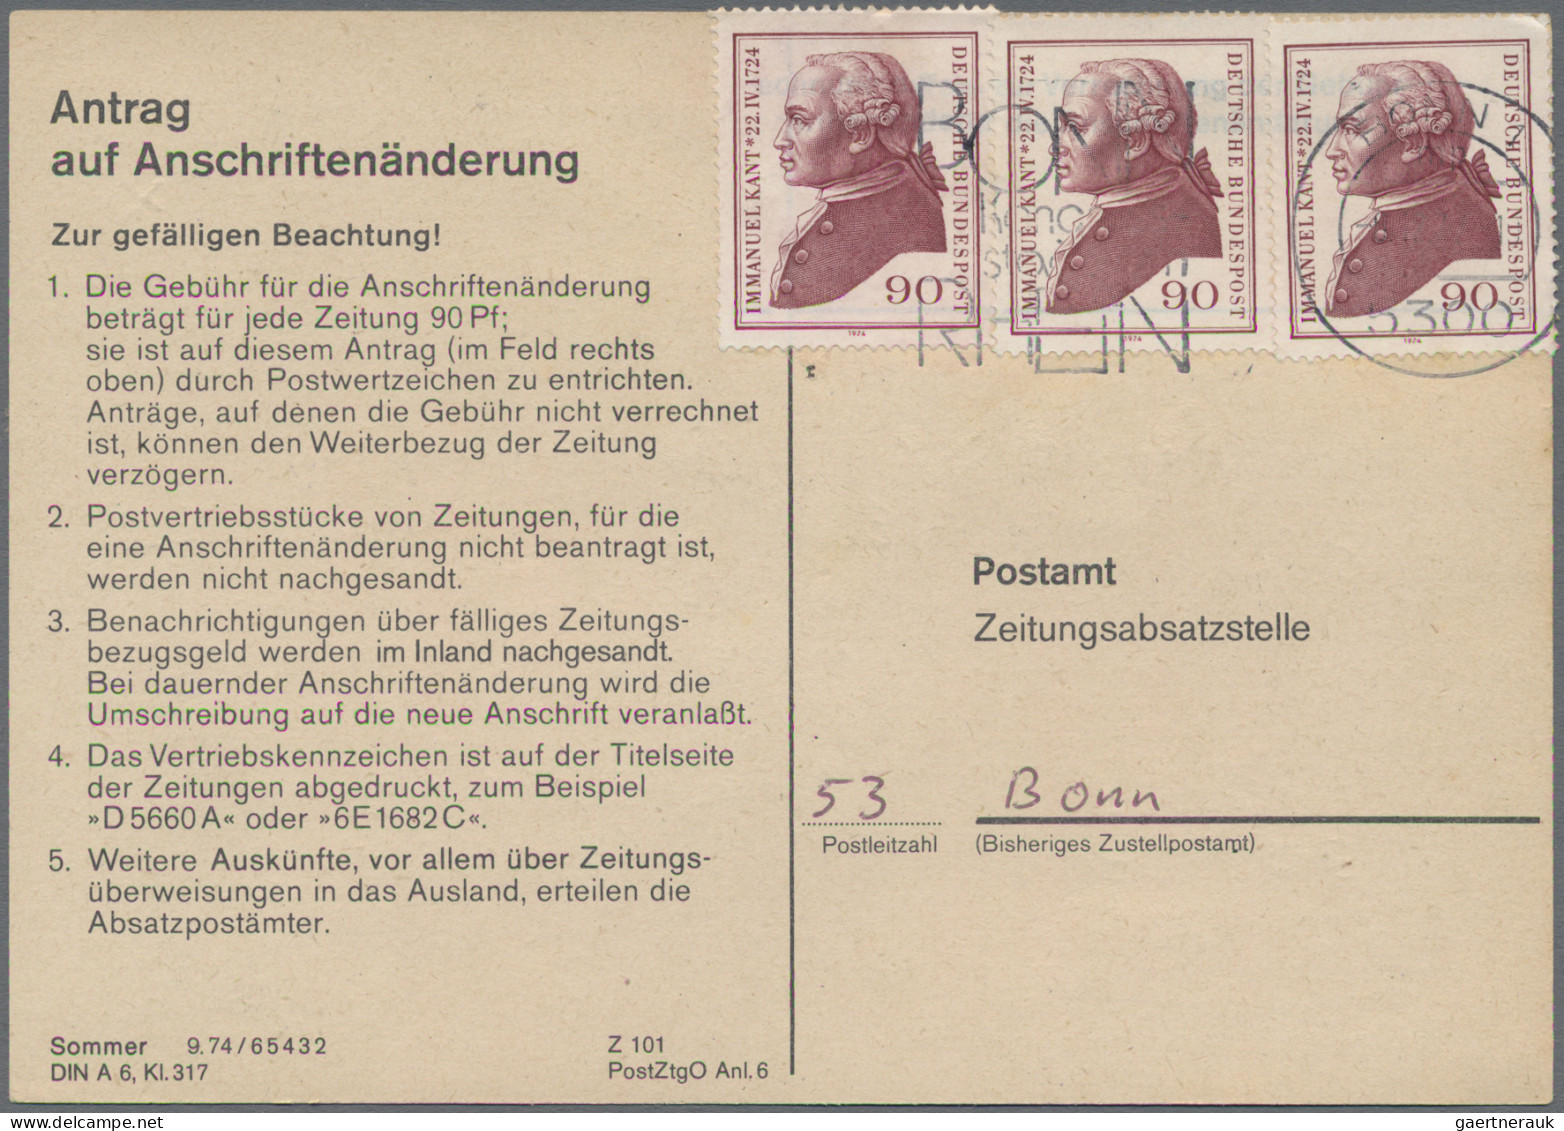 Bundesrepublik Deutschland: 1974/1978, Partie von ca. 82 Stück "Antrag auf Ansch